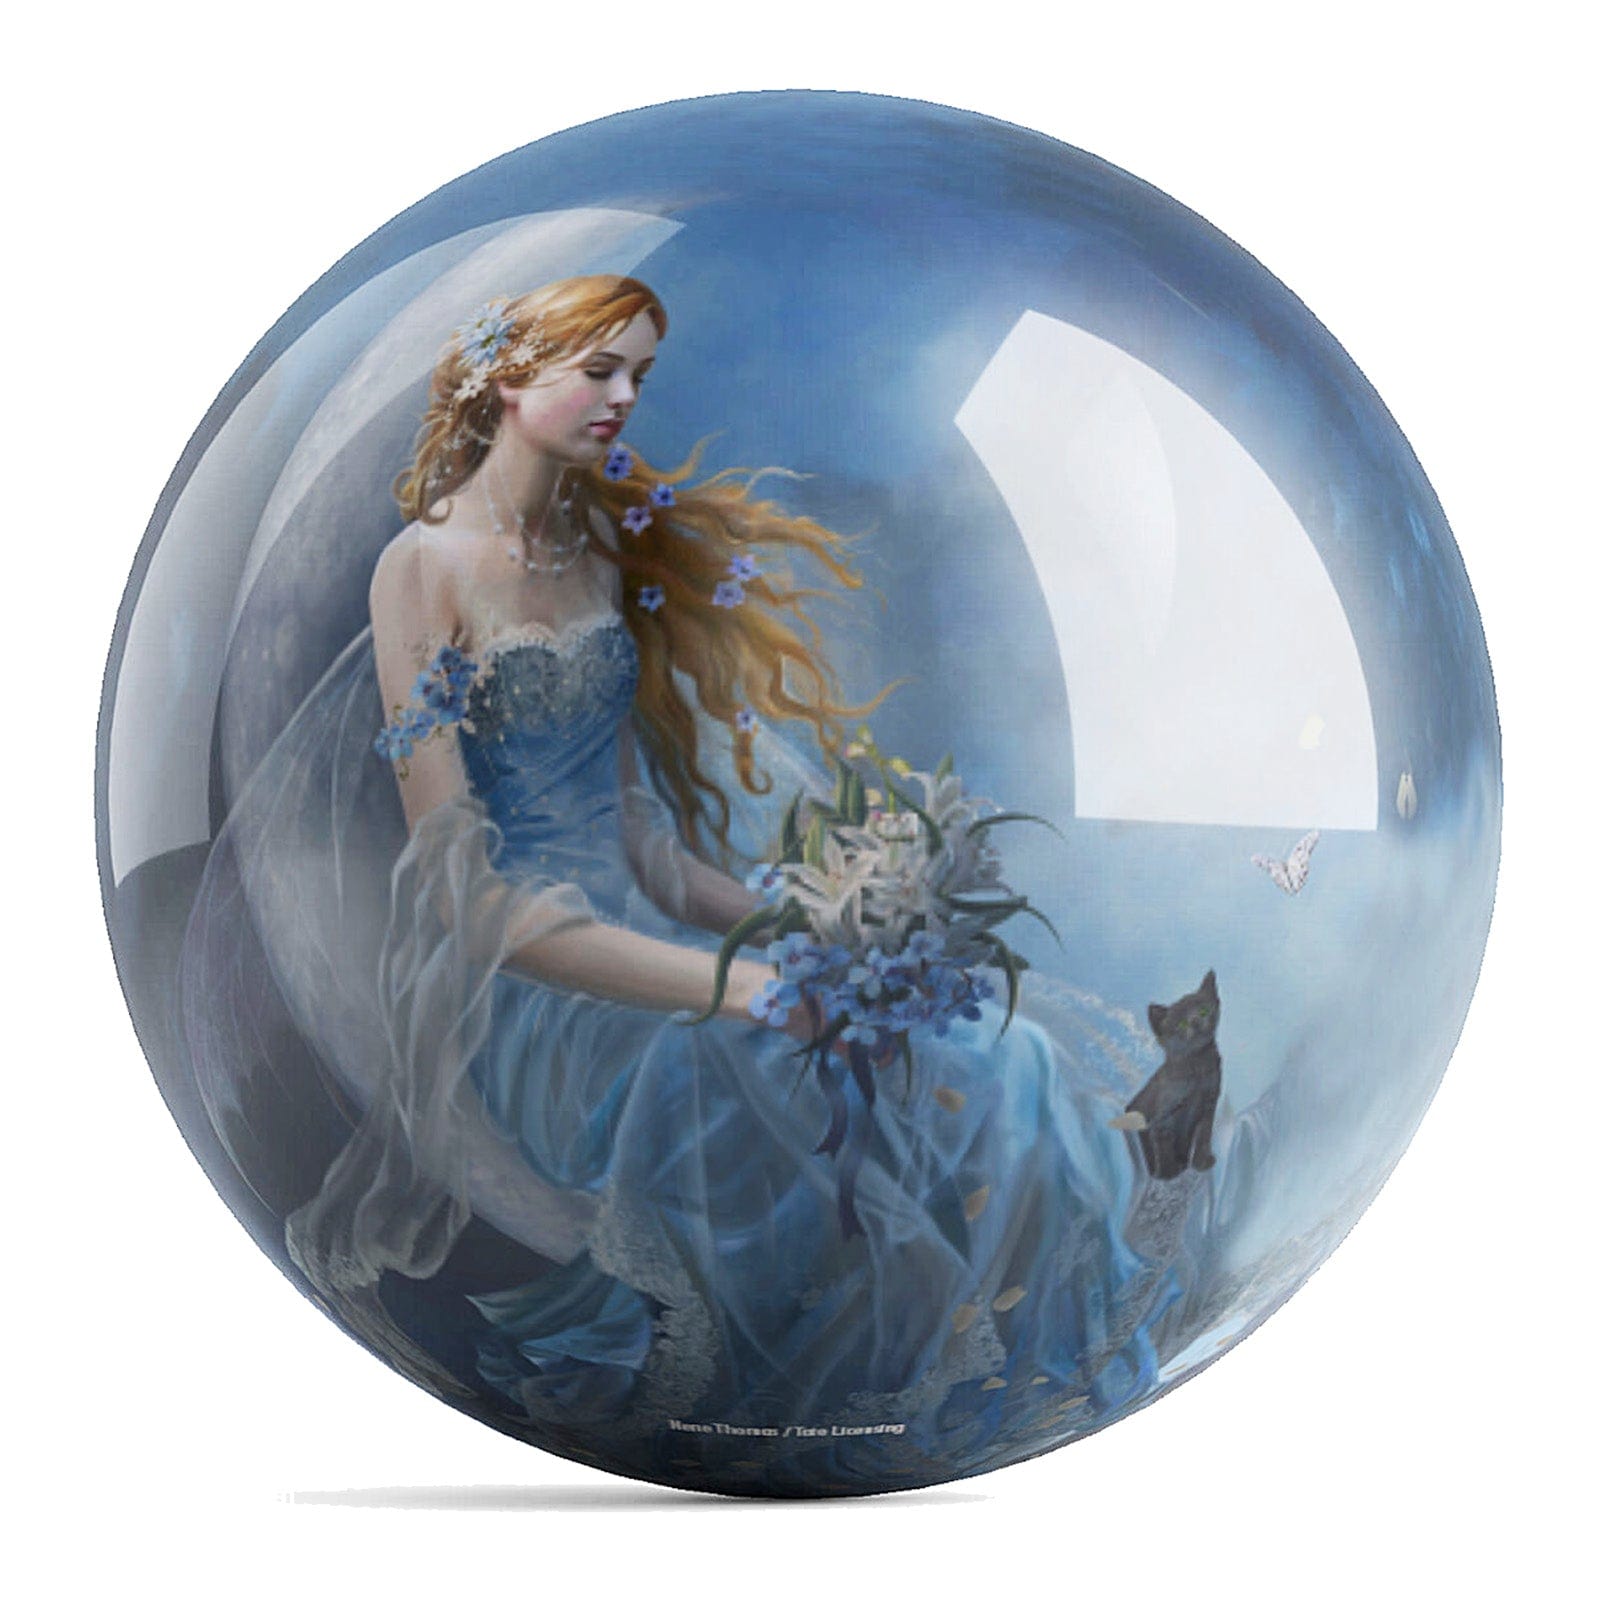 OnTheBallBowling Wind Moon Ball Bowling Ball by Nene Thomas